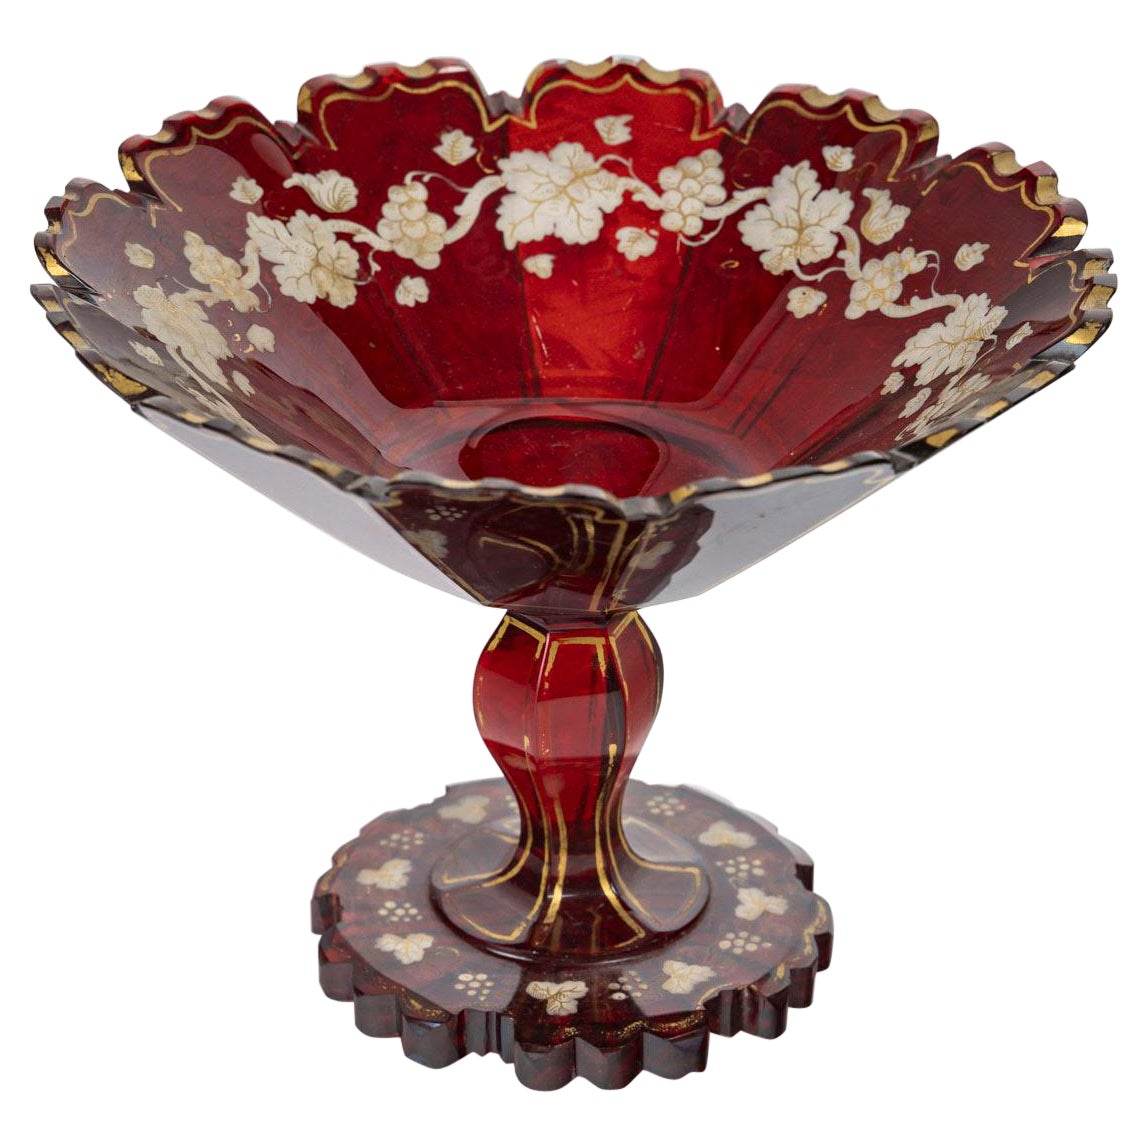 Coupe en cristal émaillé rouge de Bohême, XIXe siècle, période Napoléon III.